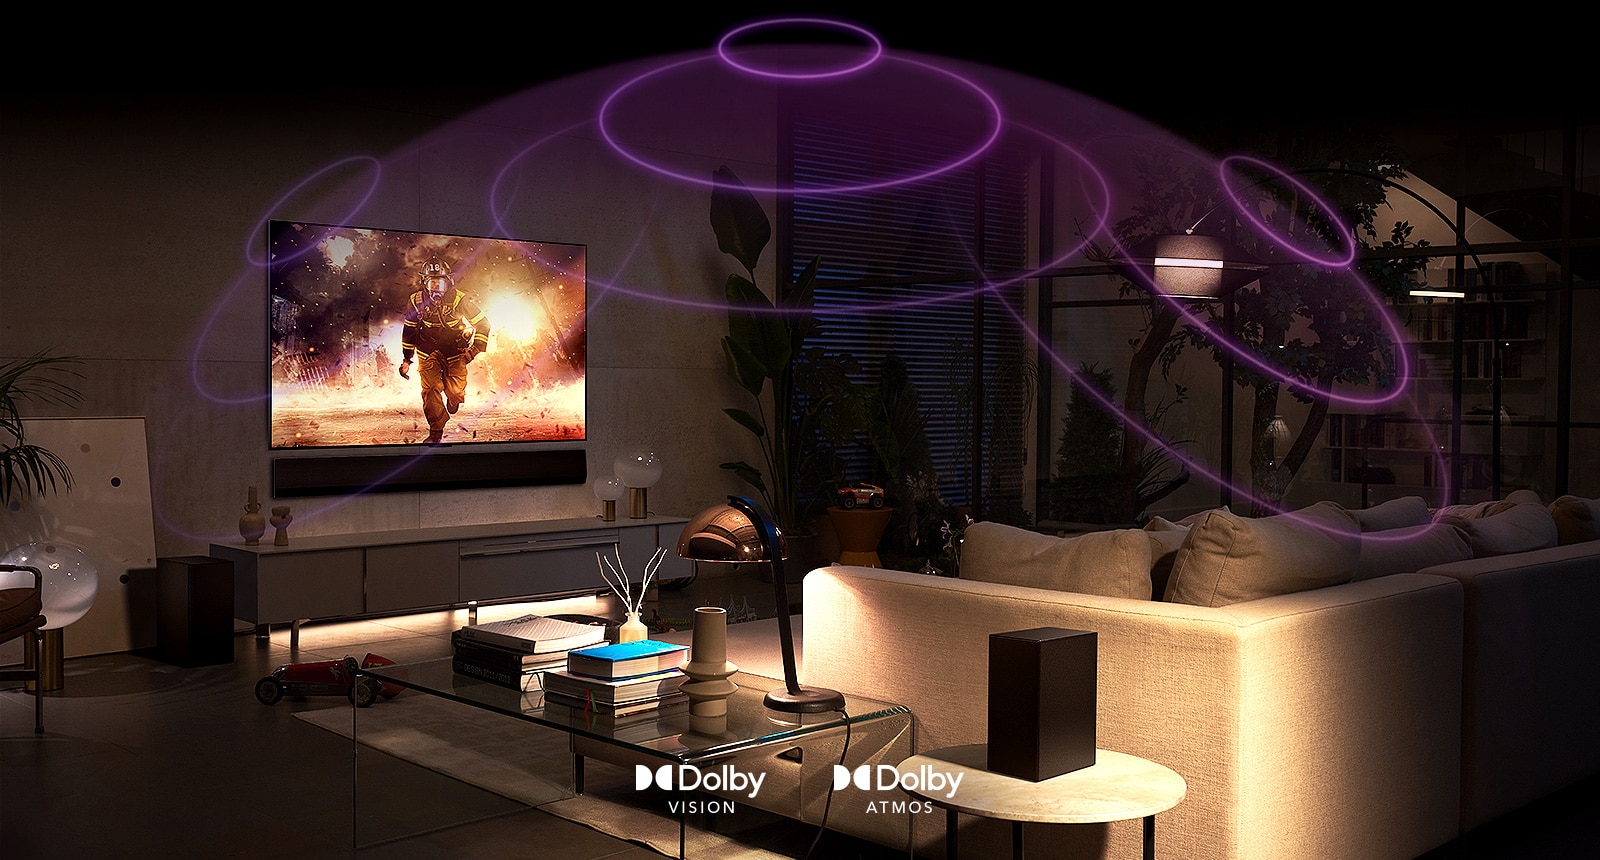 Slika LG OLED TV u prostoriji sa prikazom akcionog filma. Zvučni talasi kreiraju kupolu između sofe i televizora, prikazujući sveobuhvatan bogat zvuk.